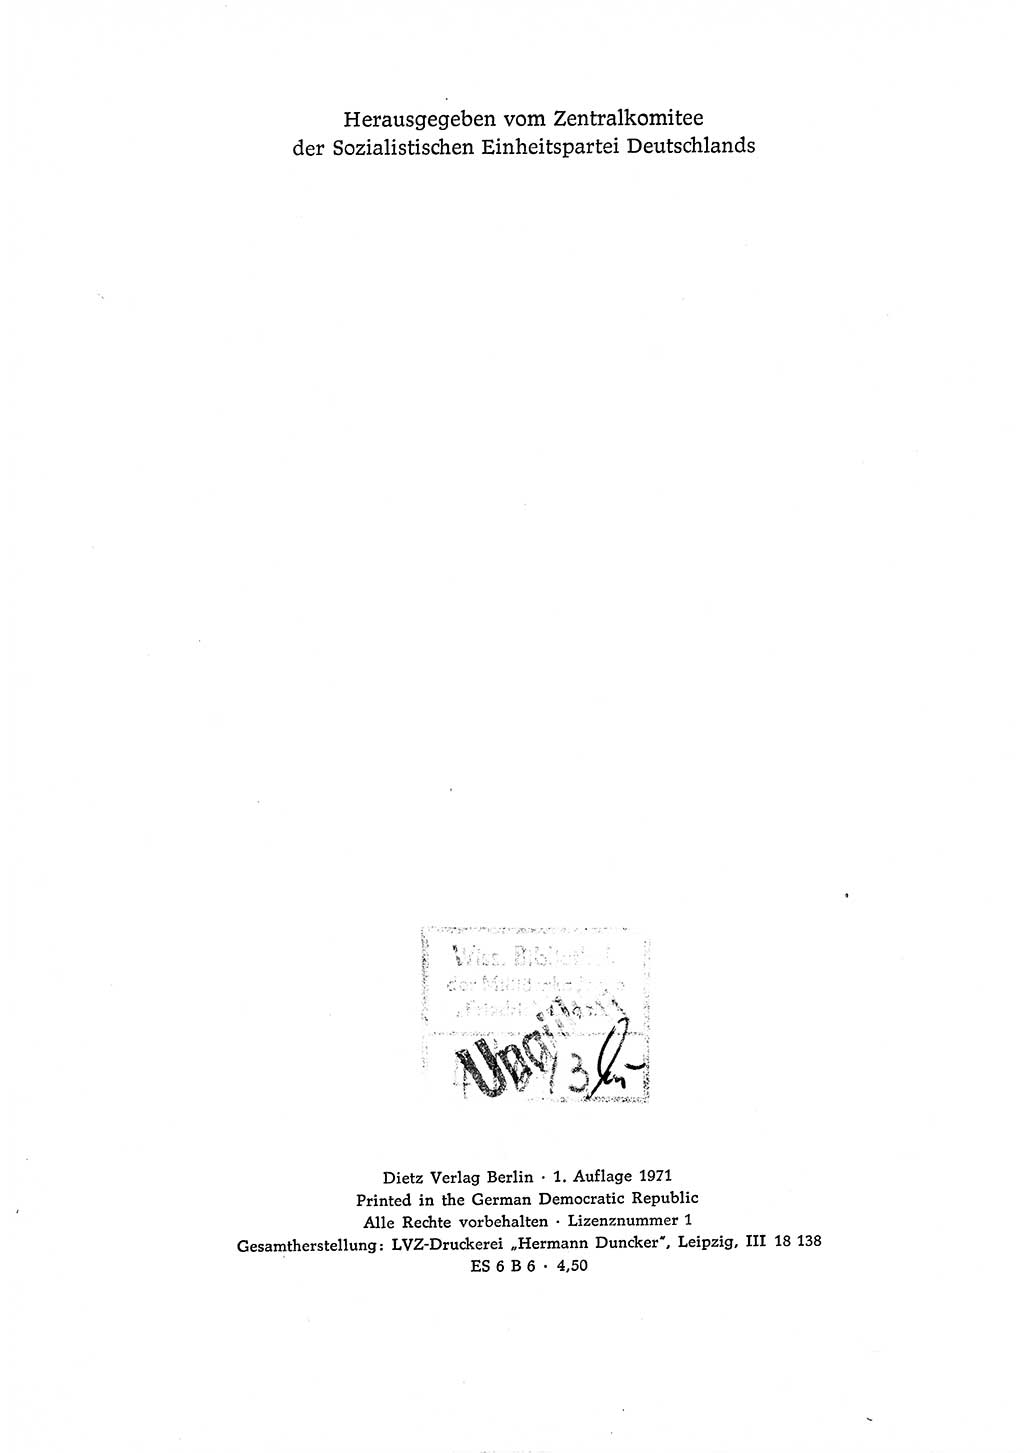 Dokumente der Sozialistischen Einheitspartei Deutschlands (SED) [Deutsche Demokratische Republik (DDR)] 1968-1969, Seite 4 (Dok. SED DDR 1968-1969, S. 4)